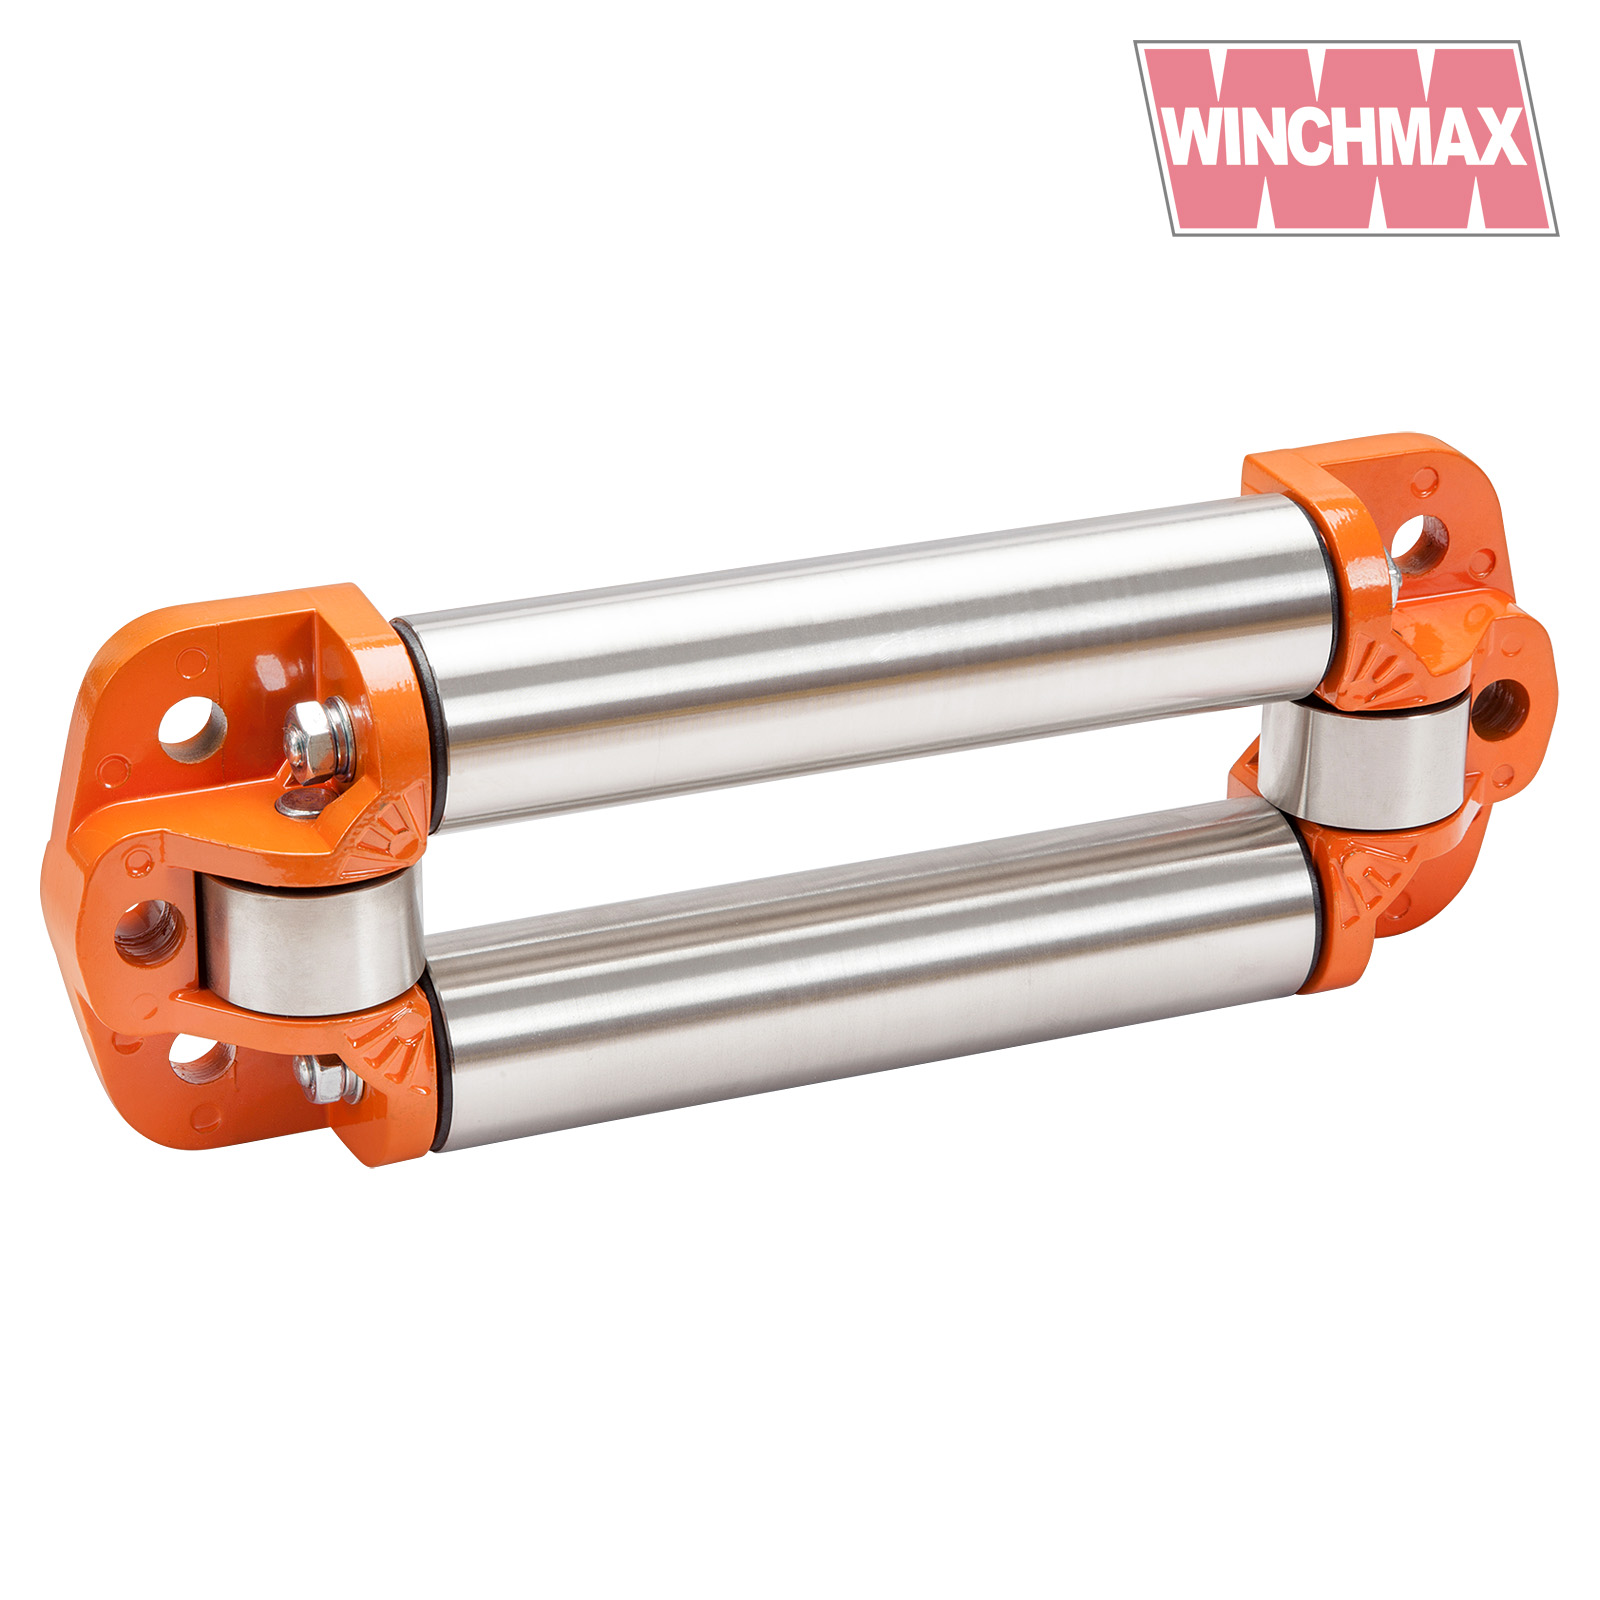 WINCHMAX Heavy Duty Roller Fairlead. Low Profile